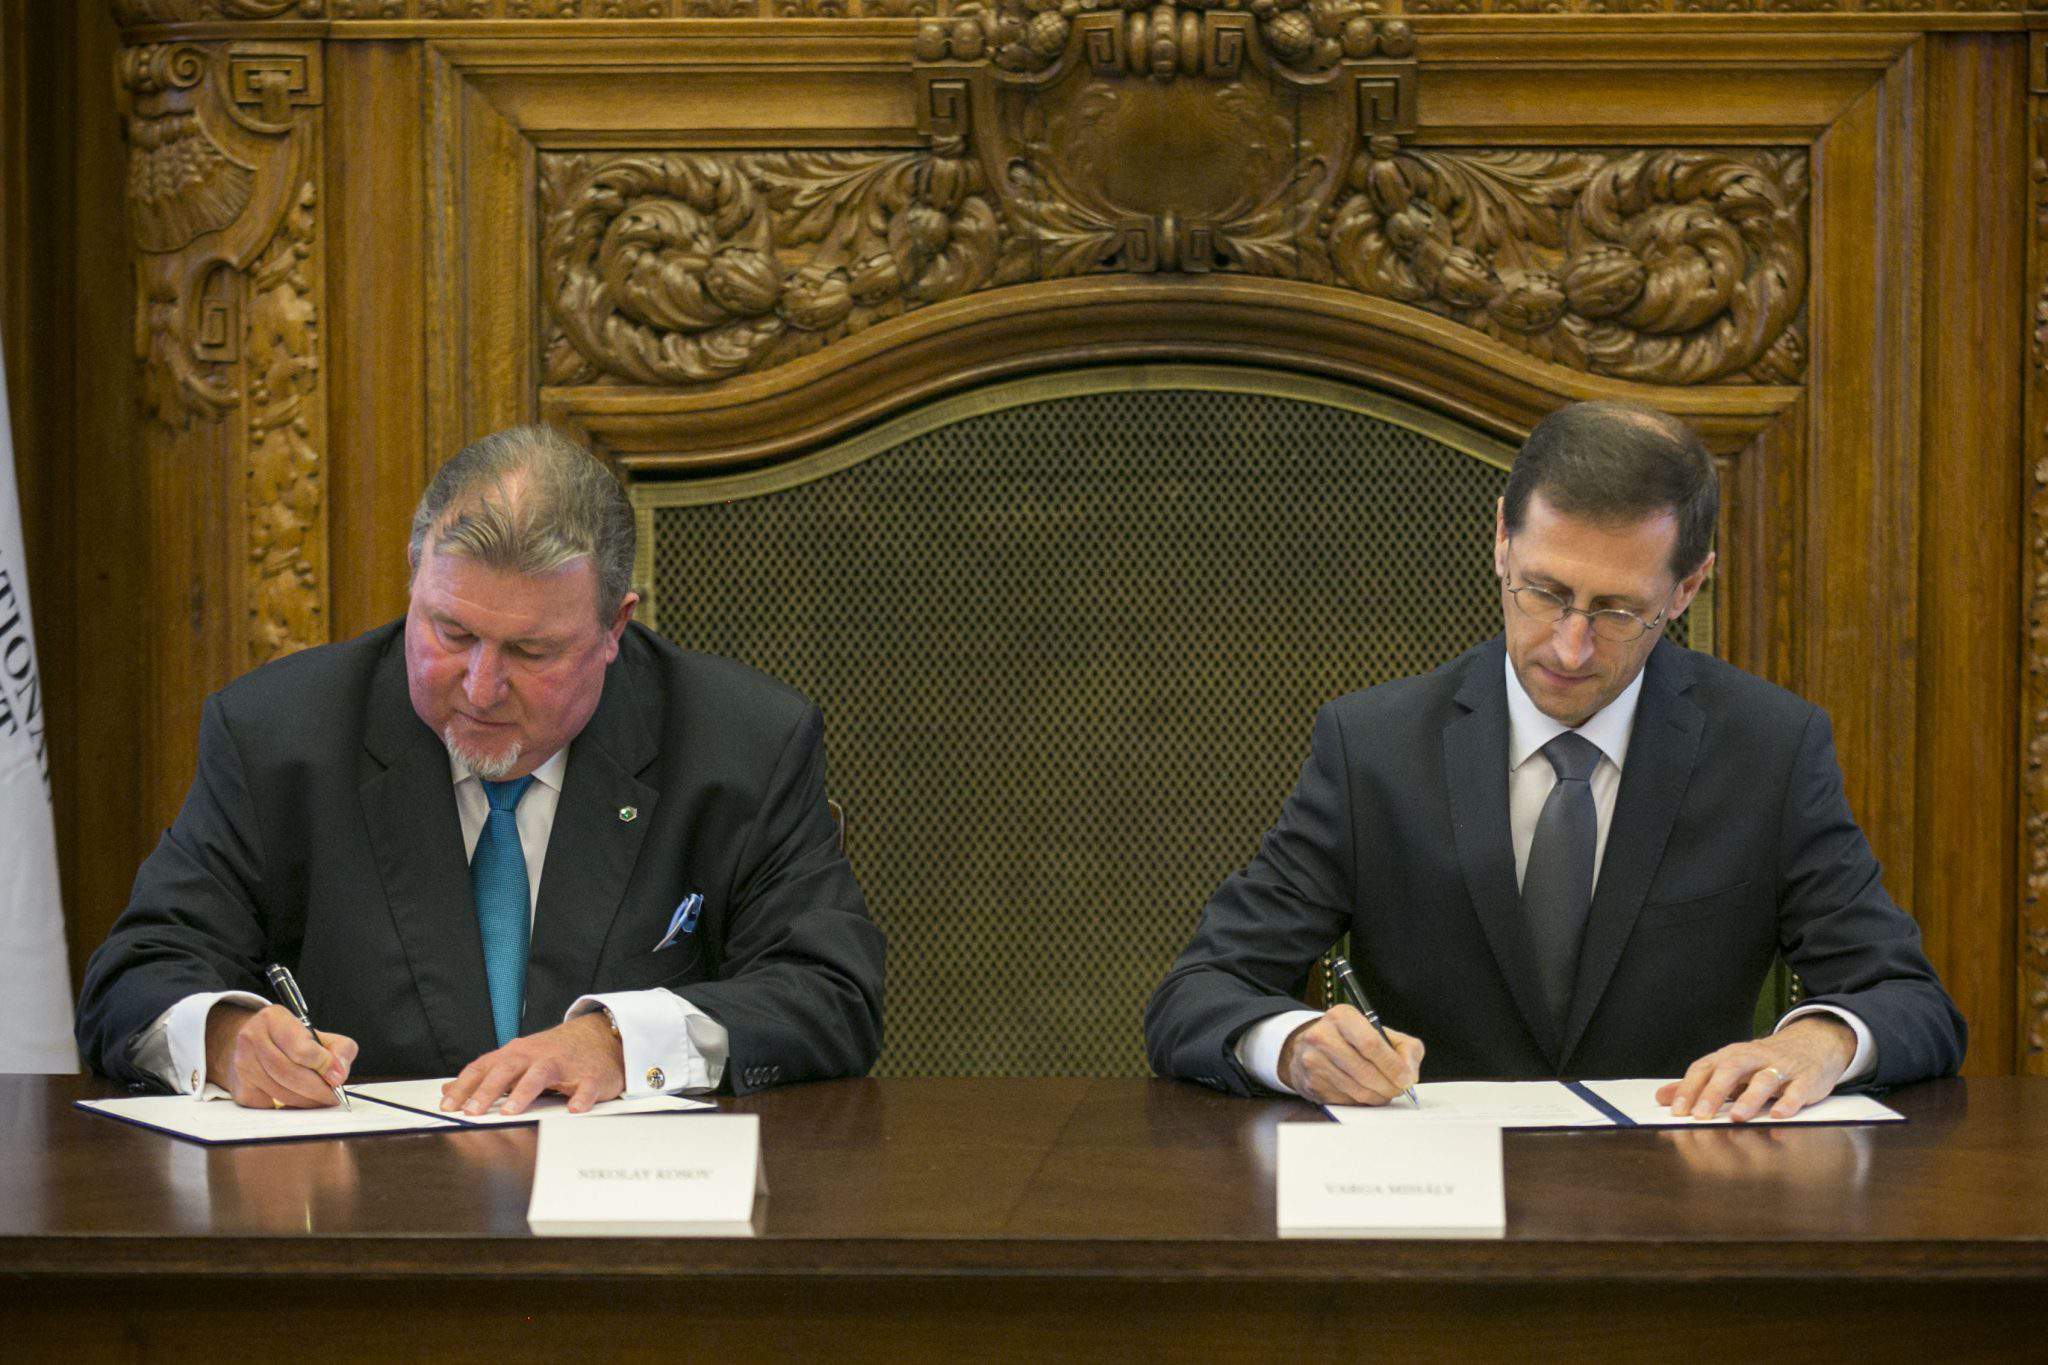 Banca d'investimento IIB, accordo iniziale di Varga per portare l'ufficio regionale in Ungheria